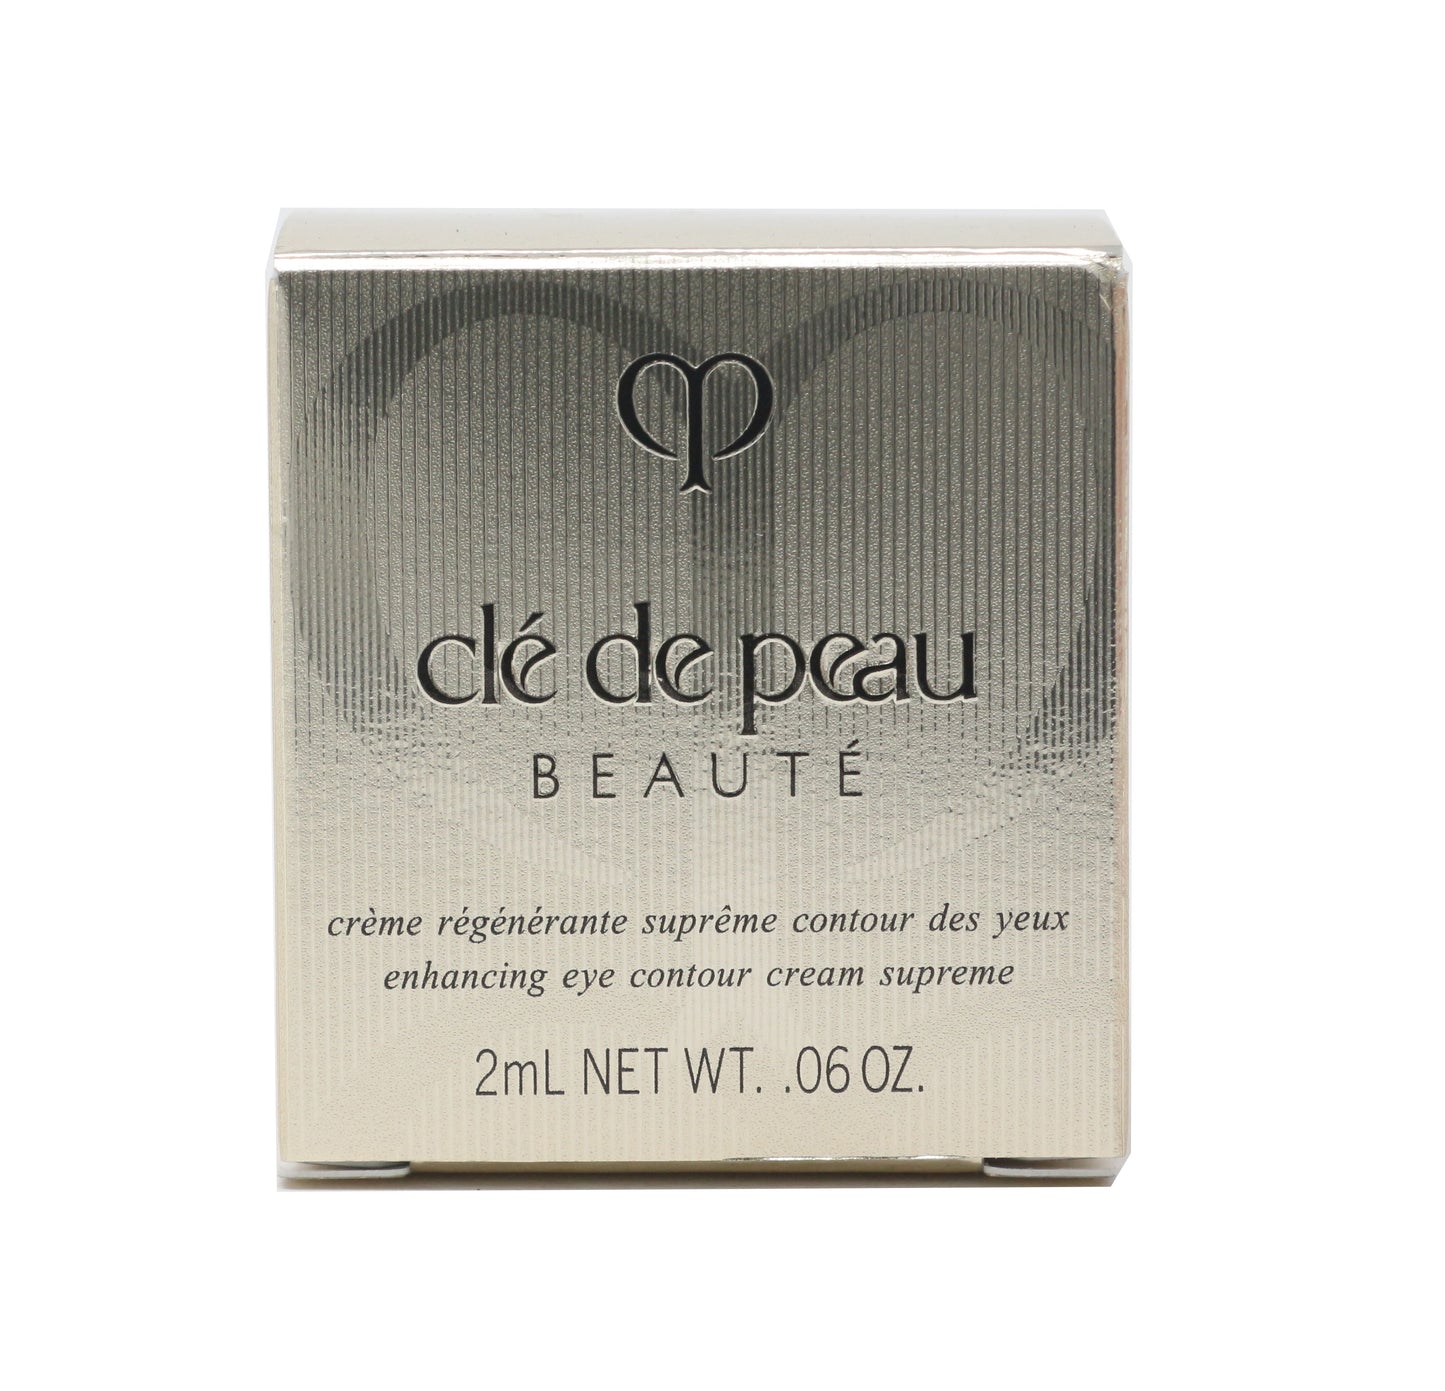 Cle De Peau Beauty Enhancing Eye Contour Cream Supreme 2ml Travel Size New InBox